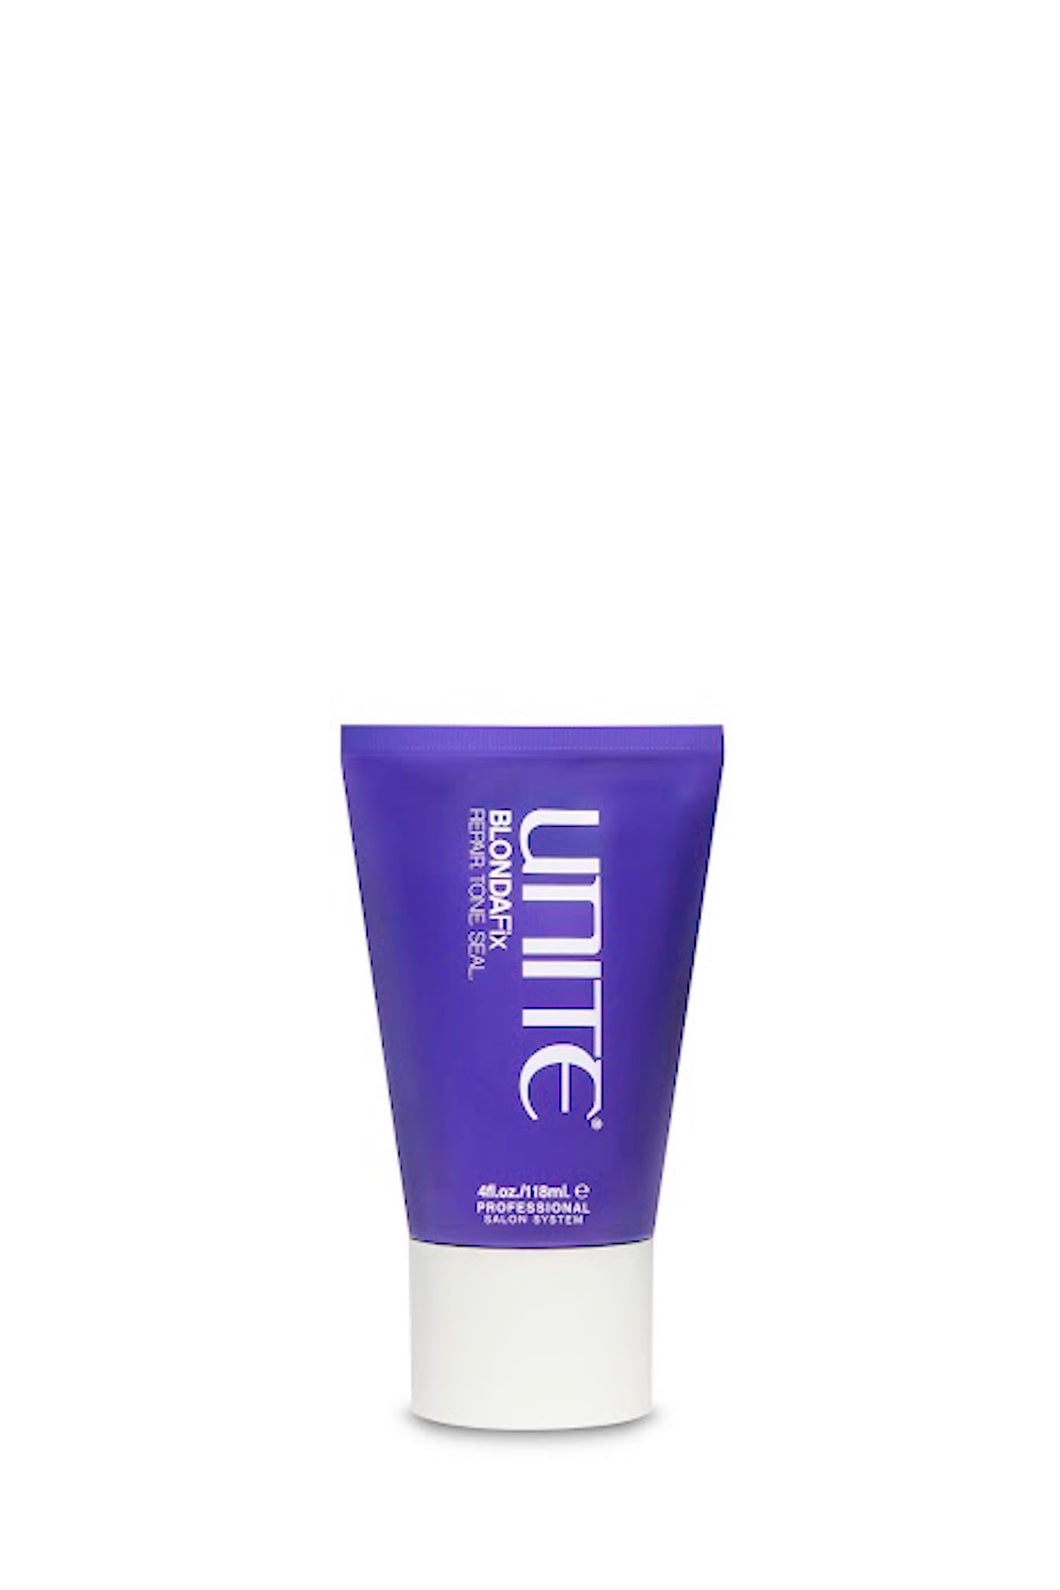 Unite - BLONDA Fix Treatment purple upside down 4 oz. bottle with white flip cap